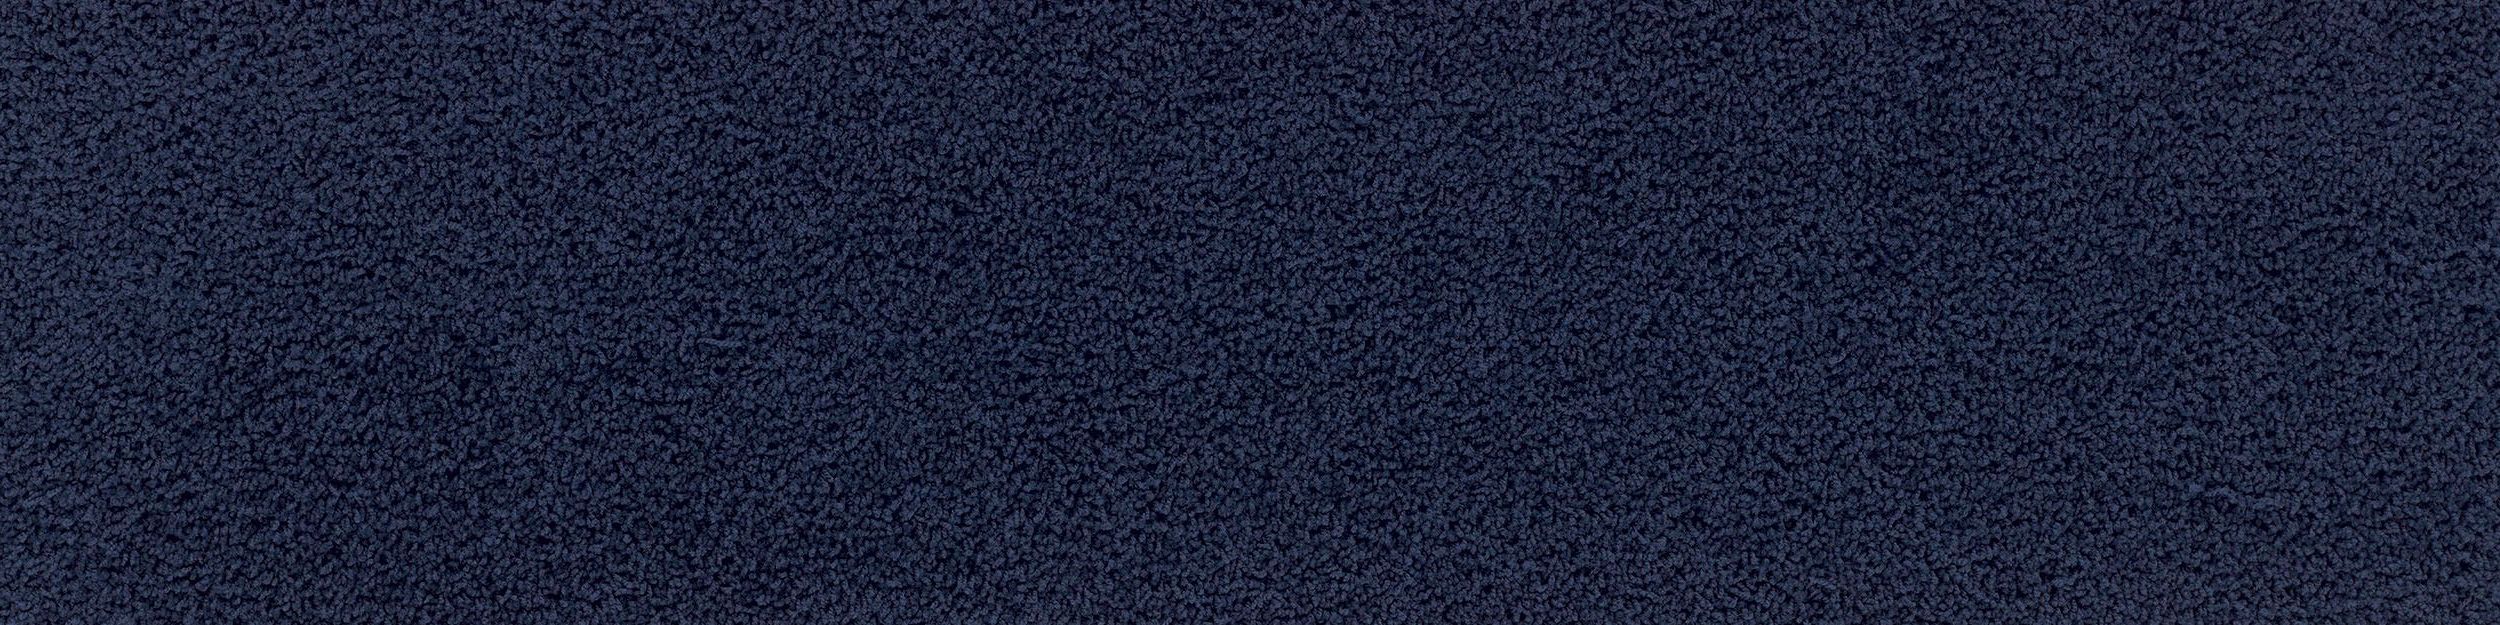 HN830 Carpet Tile In Cobalt image number 2